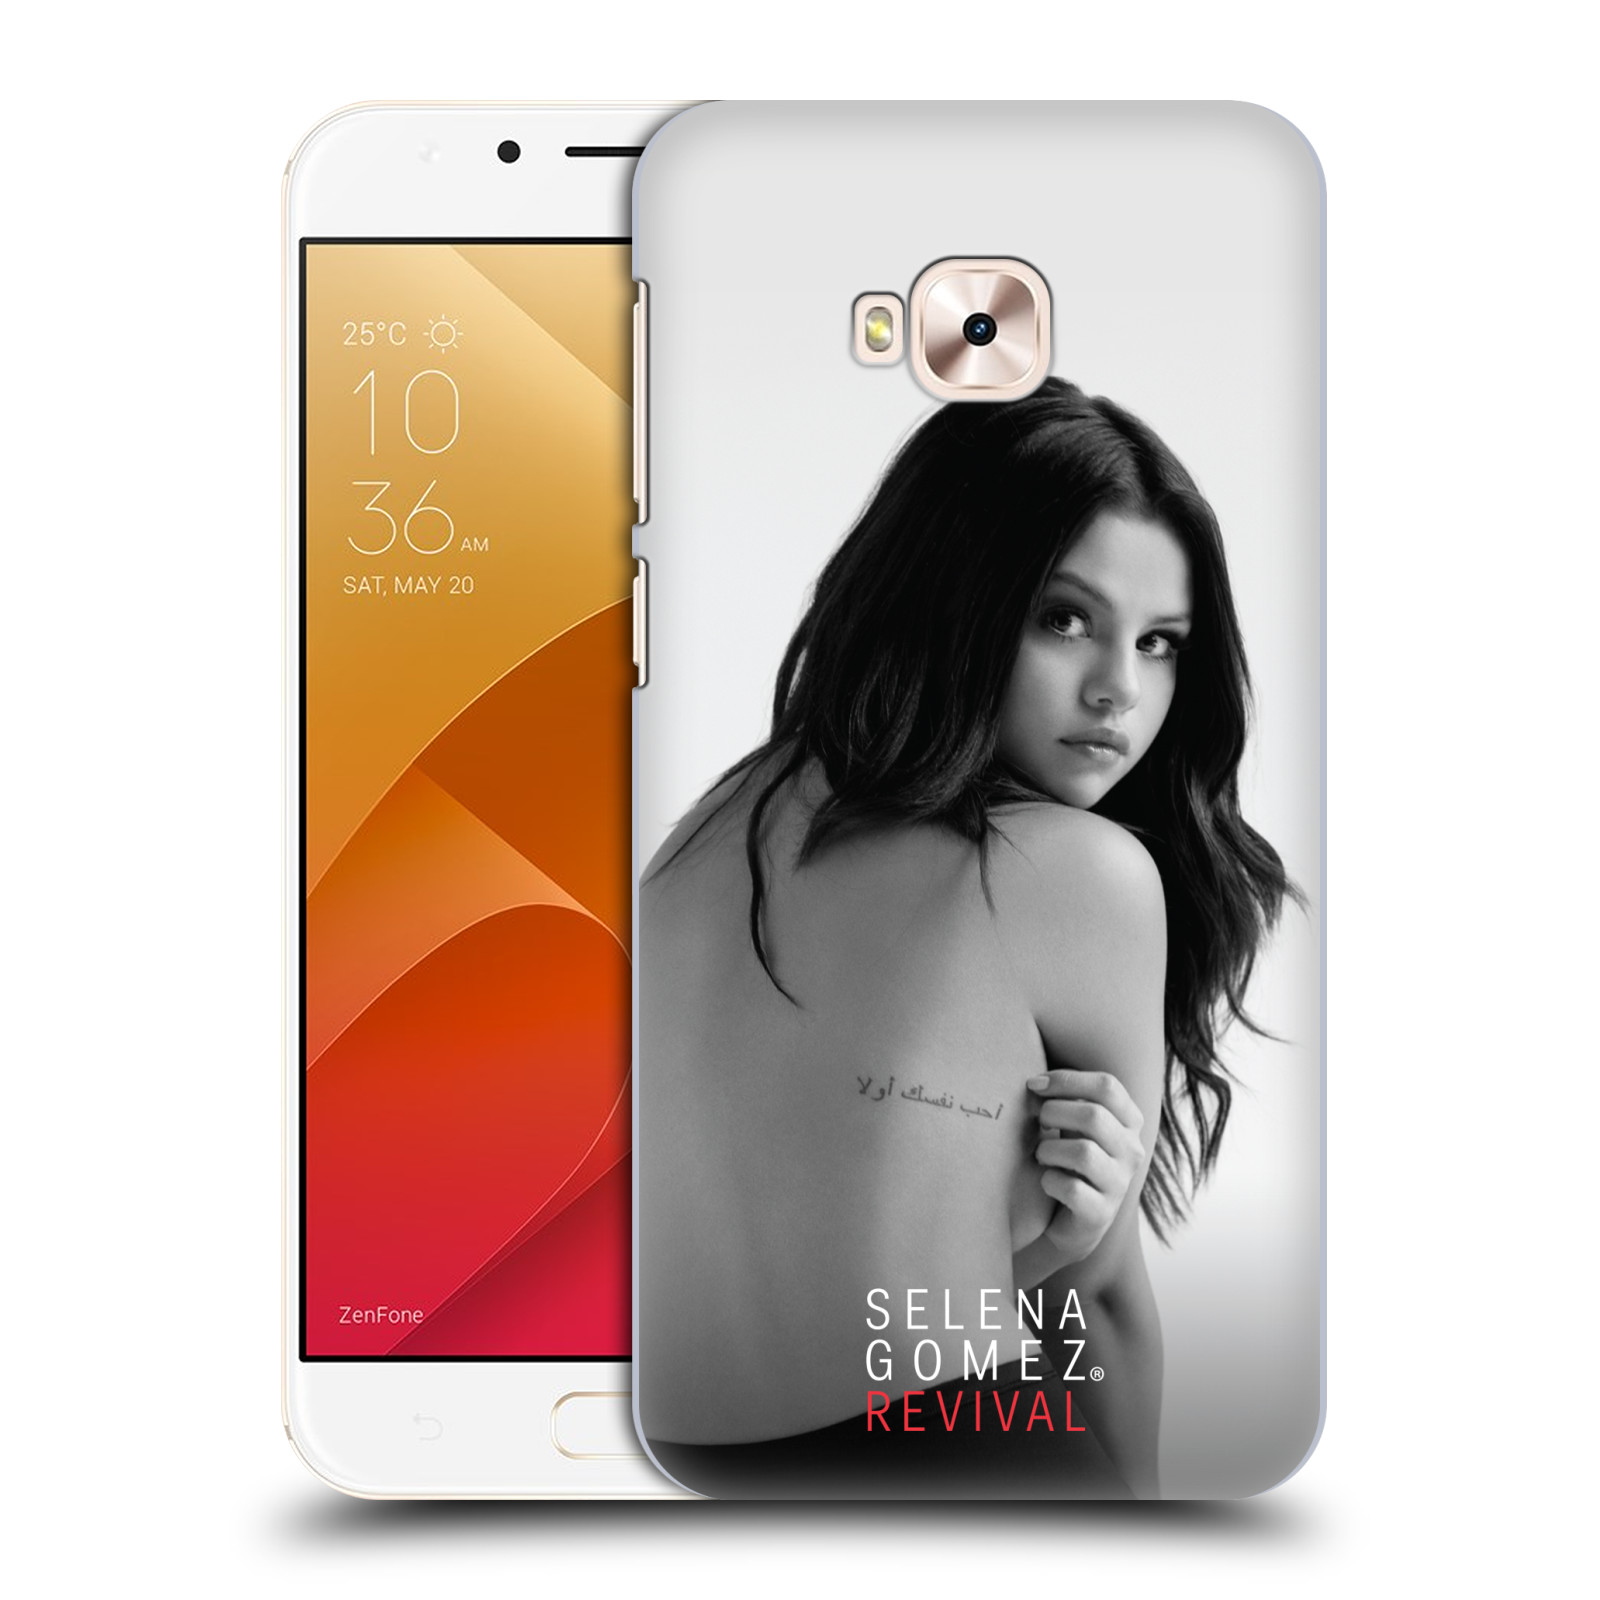 HEAD CASE plastový obal na mobil Asus Zenfone 4 Selfie Pro ZD552KL Zpěvačka Selena Gomez foto Revival zadní strana